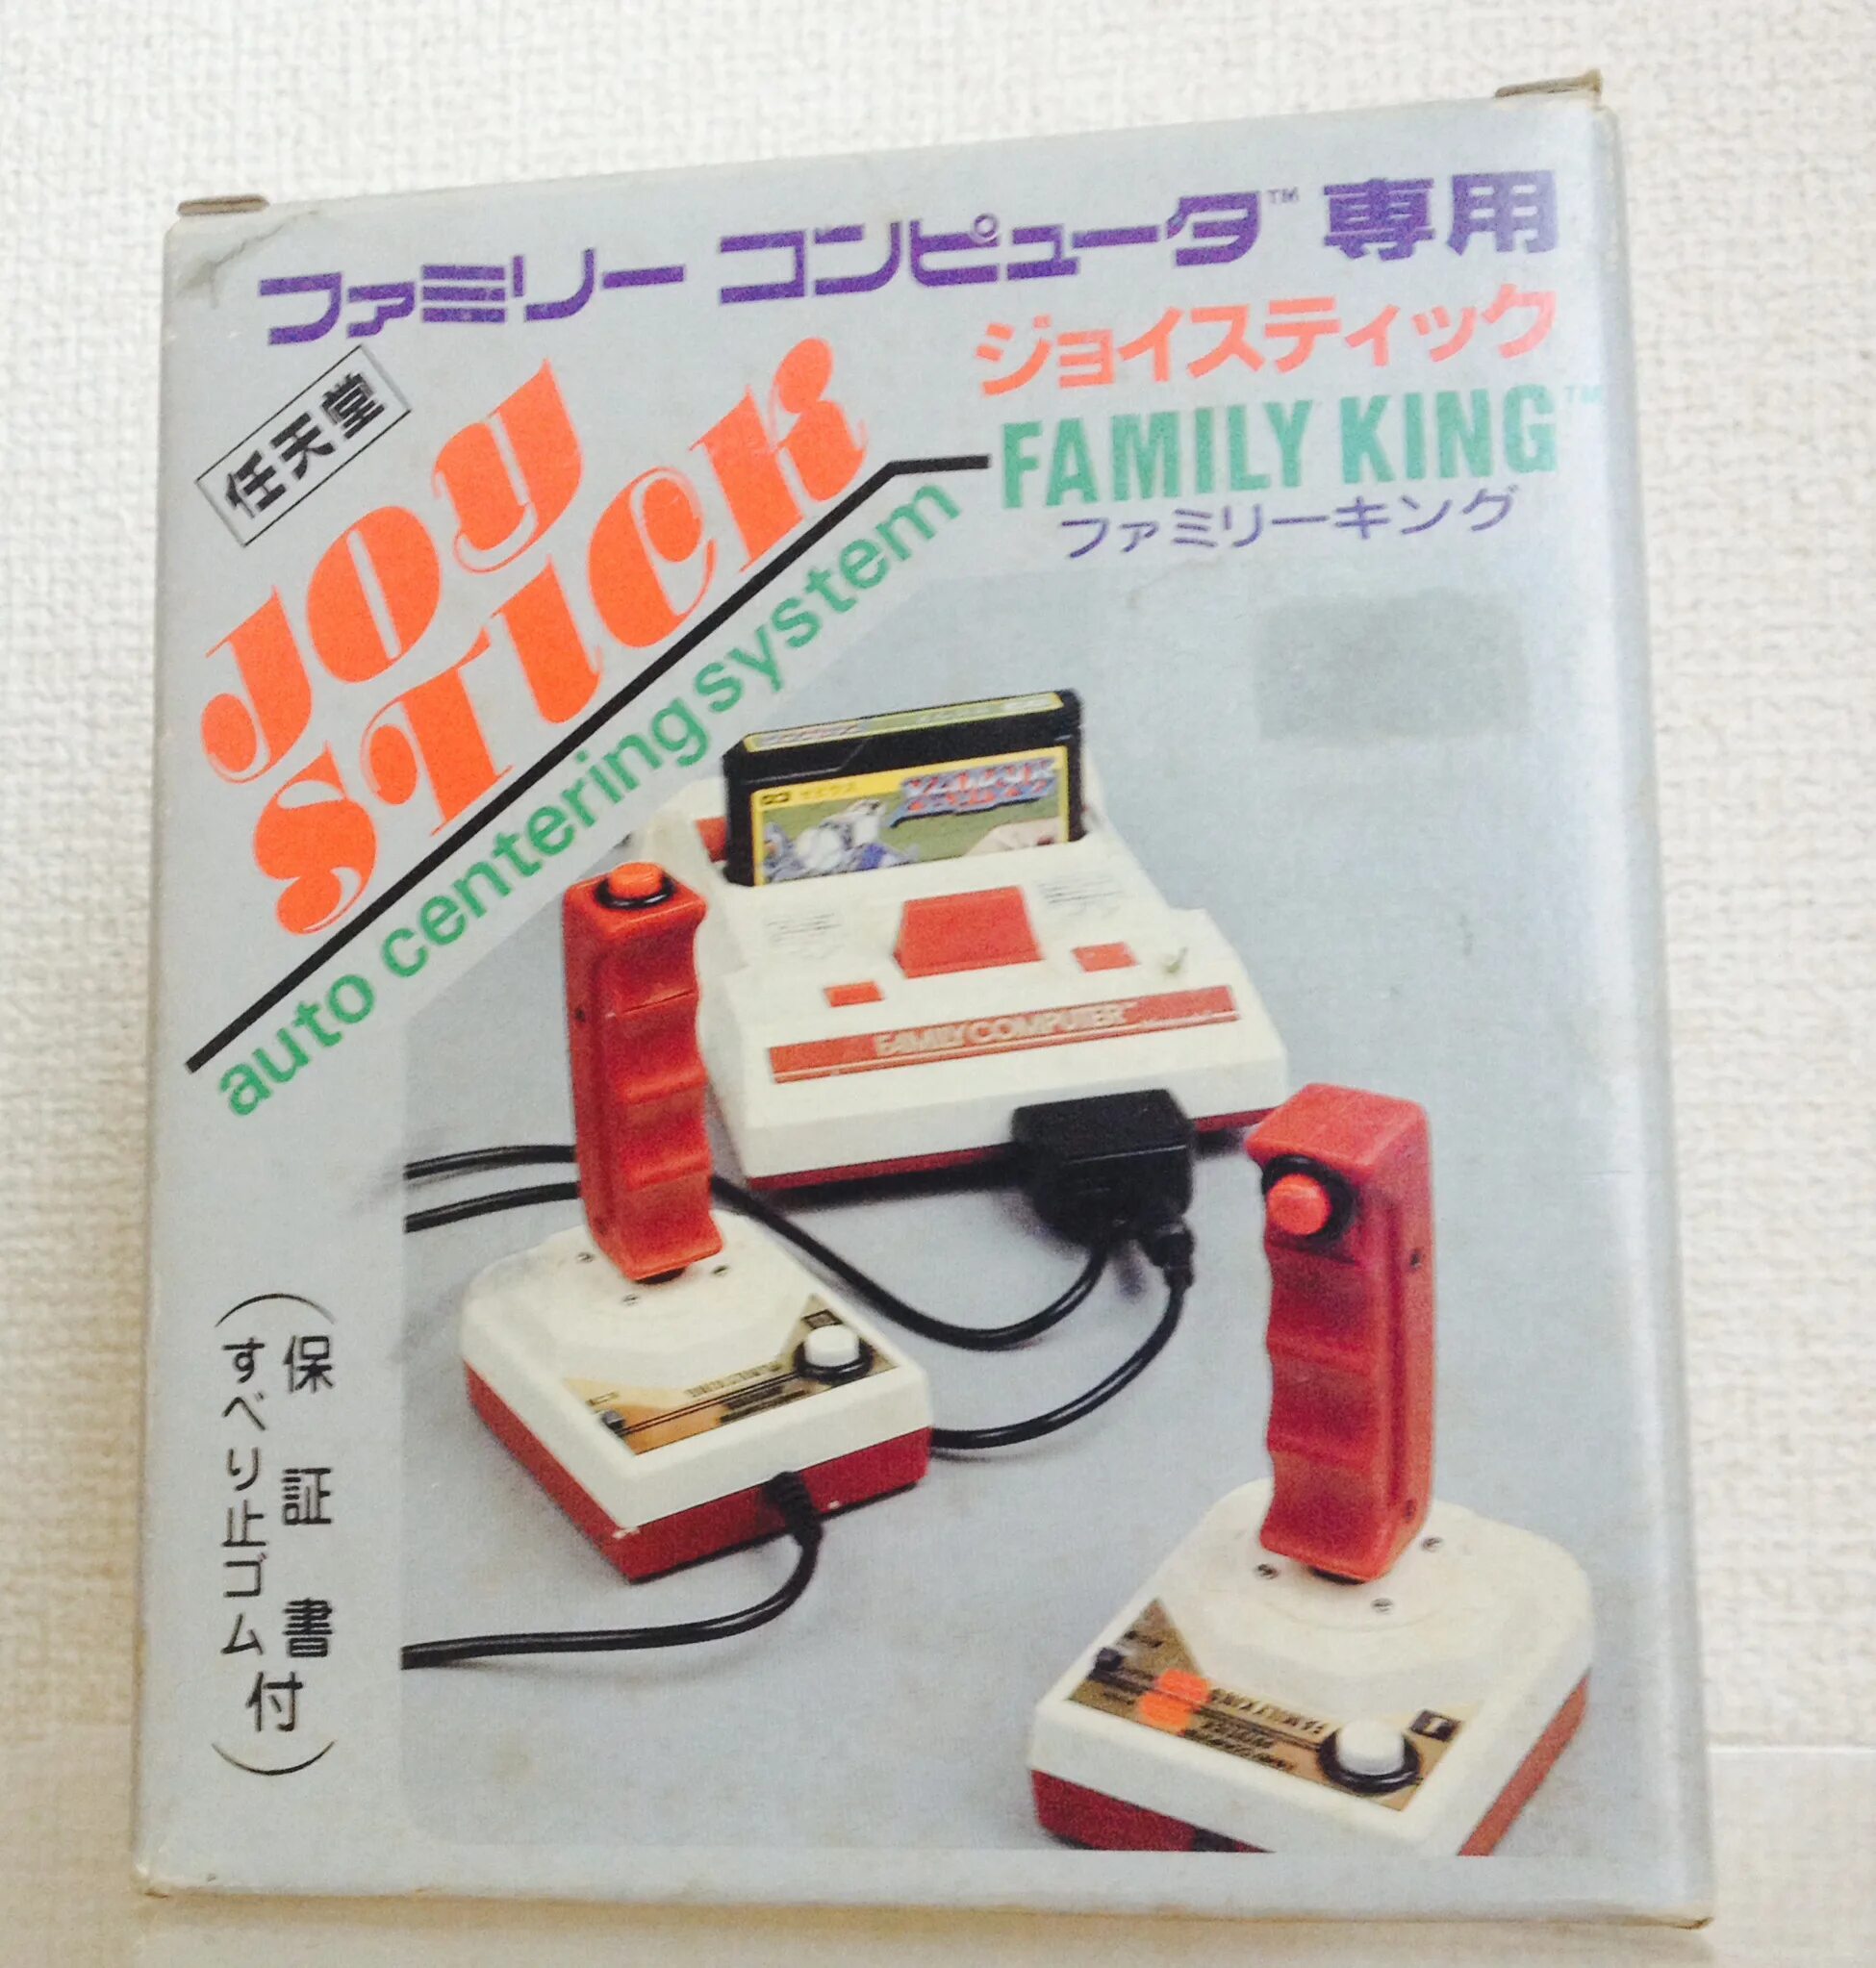 Nintendo king. Джойстик от Фамиком. Джойстик Famicom. Famicom Hudson Gamepad. Famicom робот.